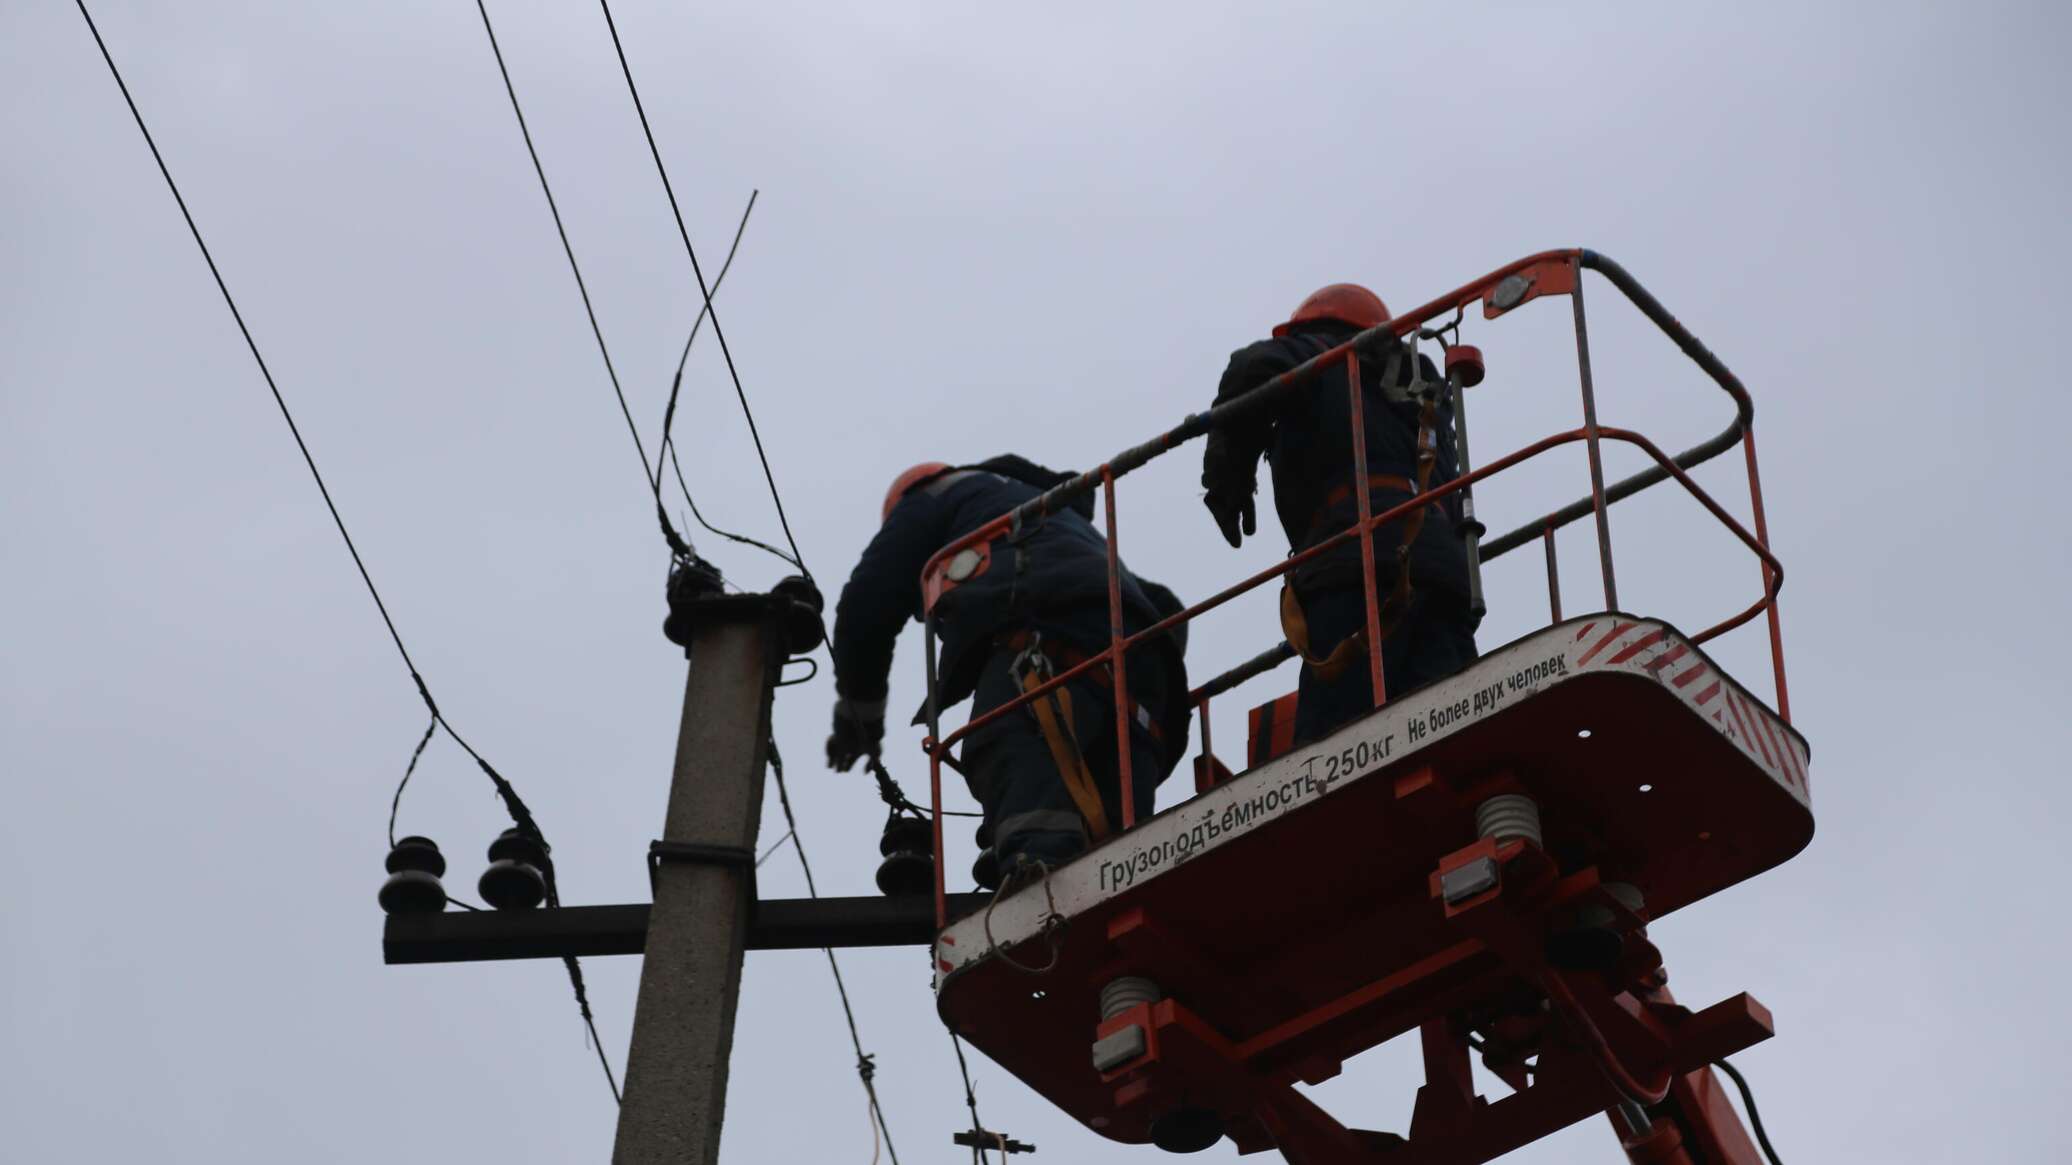 Брянск отключение электроэнергии